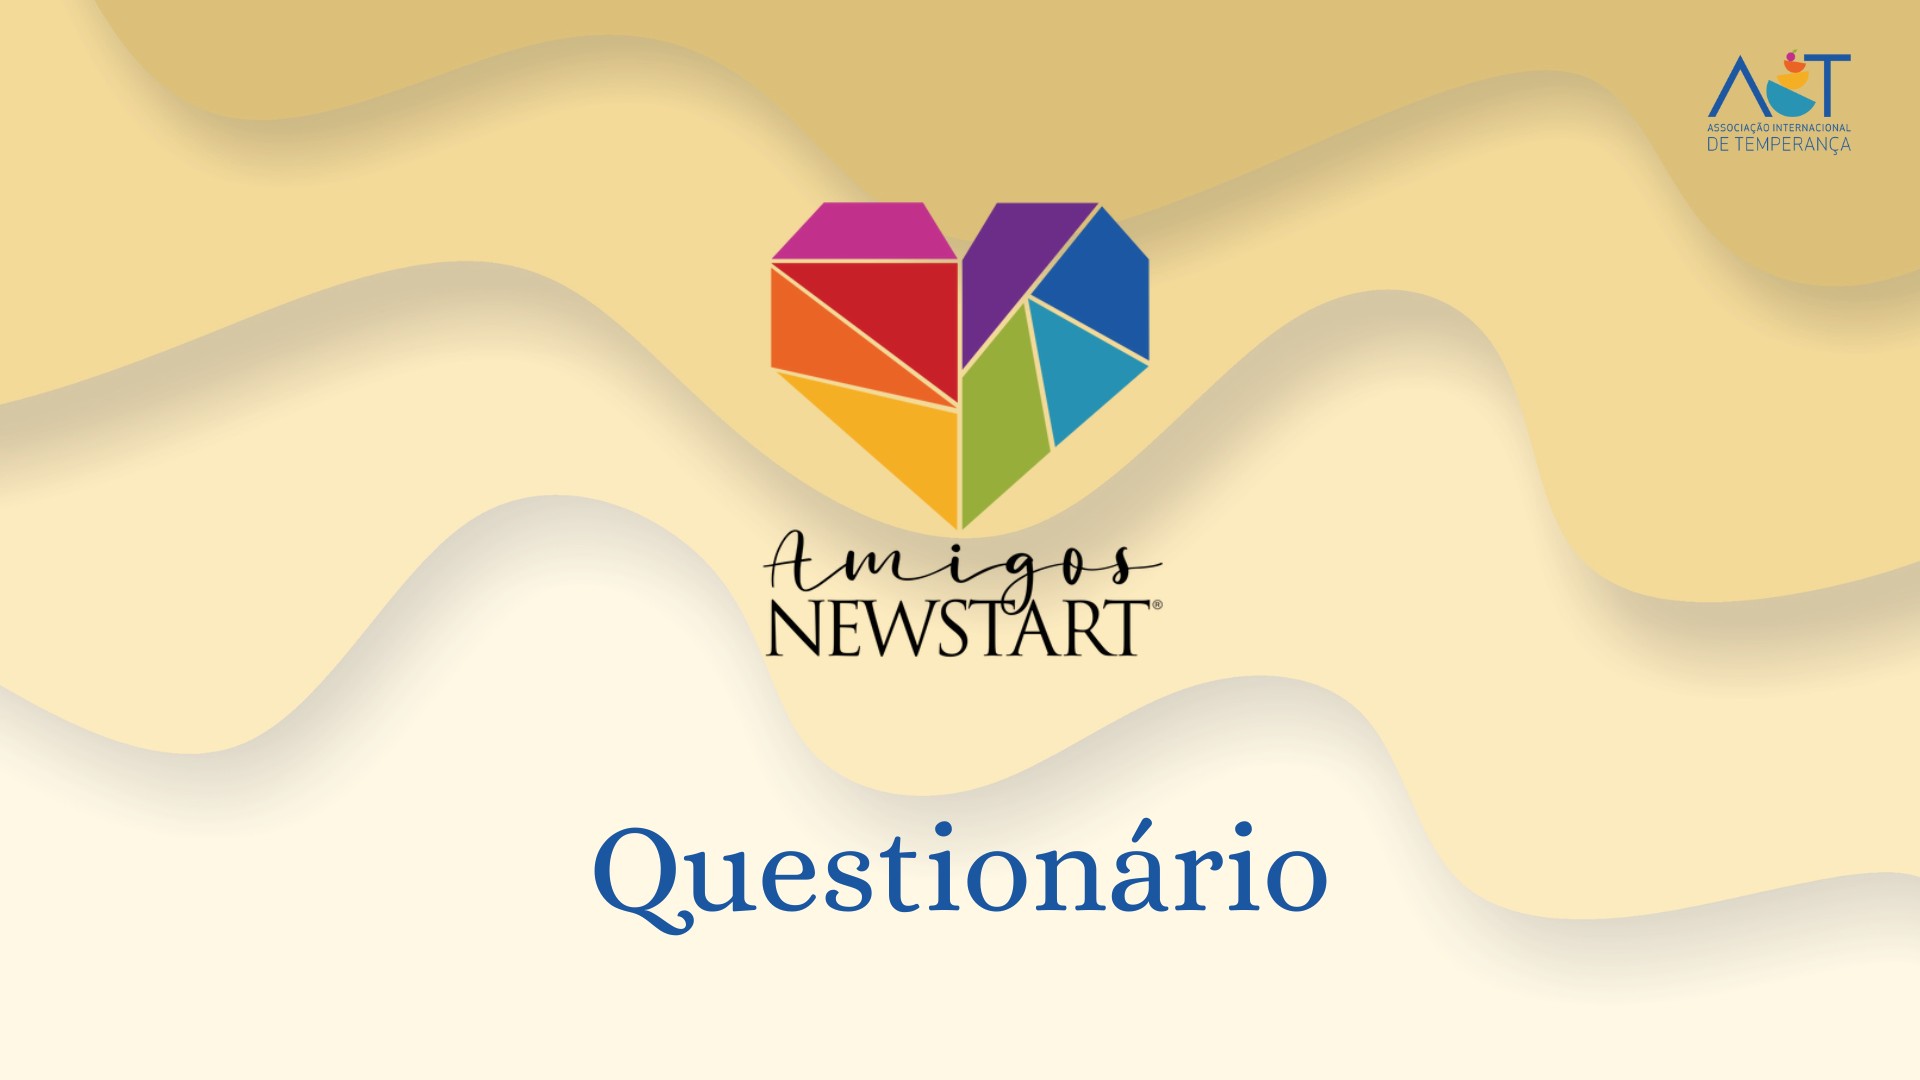 Questionário “Amigos NEWSTART”